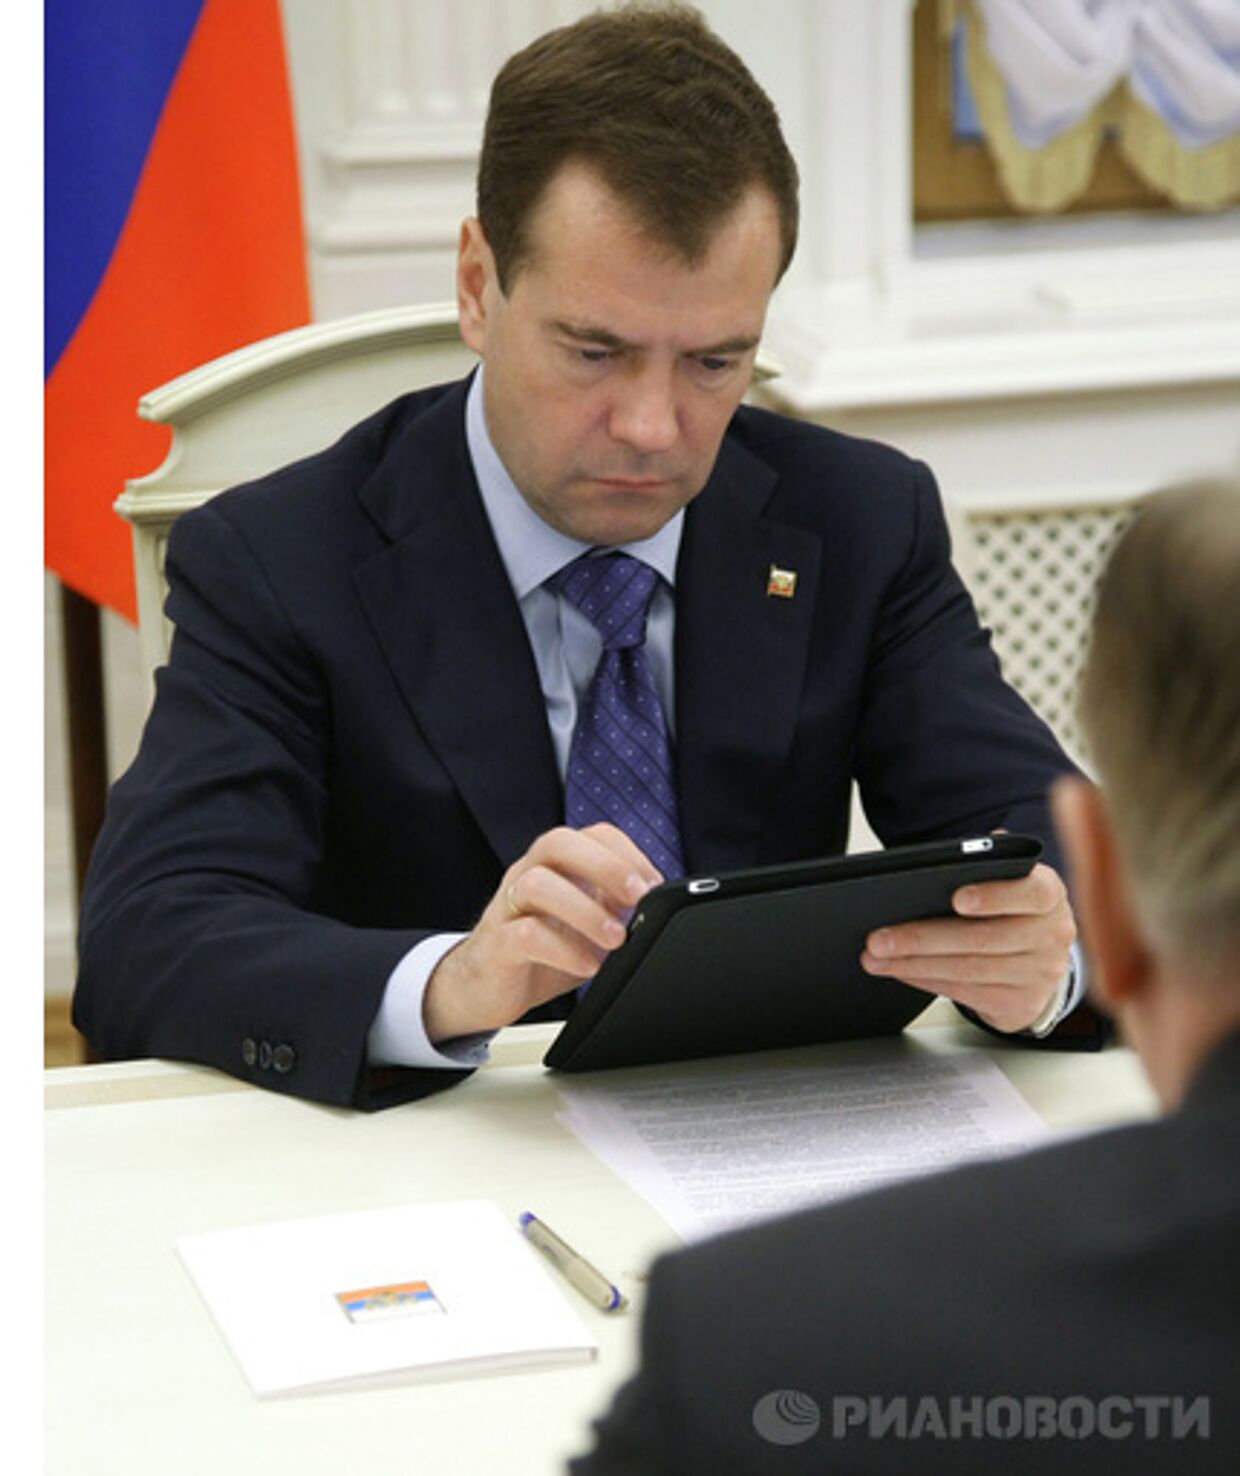 приложение для iPad «Мобильный офис президента» разрабатывается специально для Дмитрия Медведева